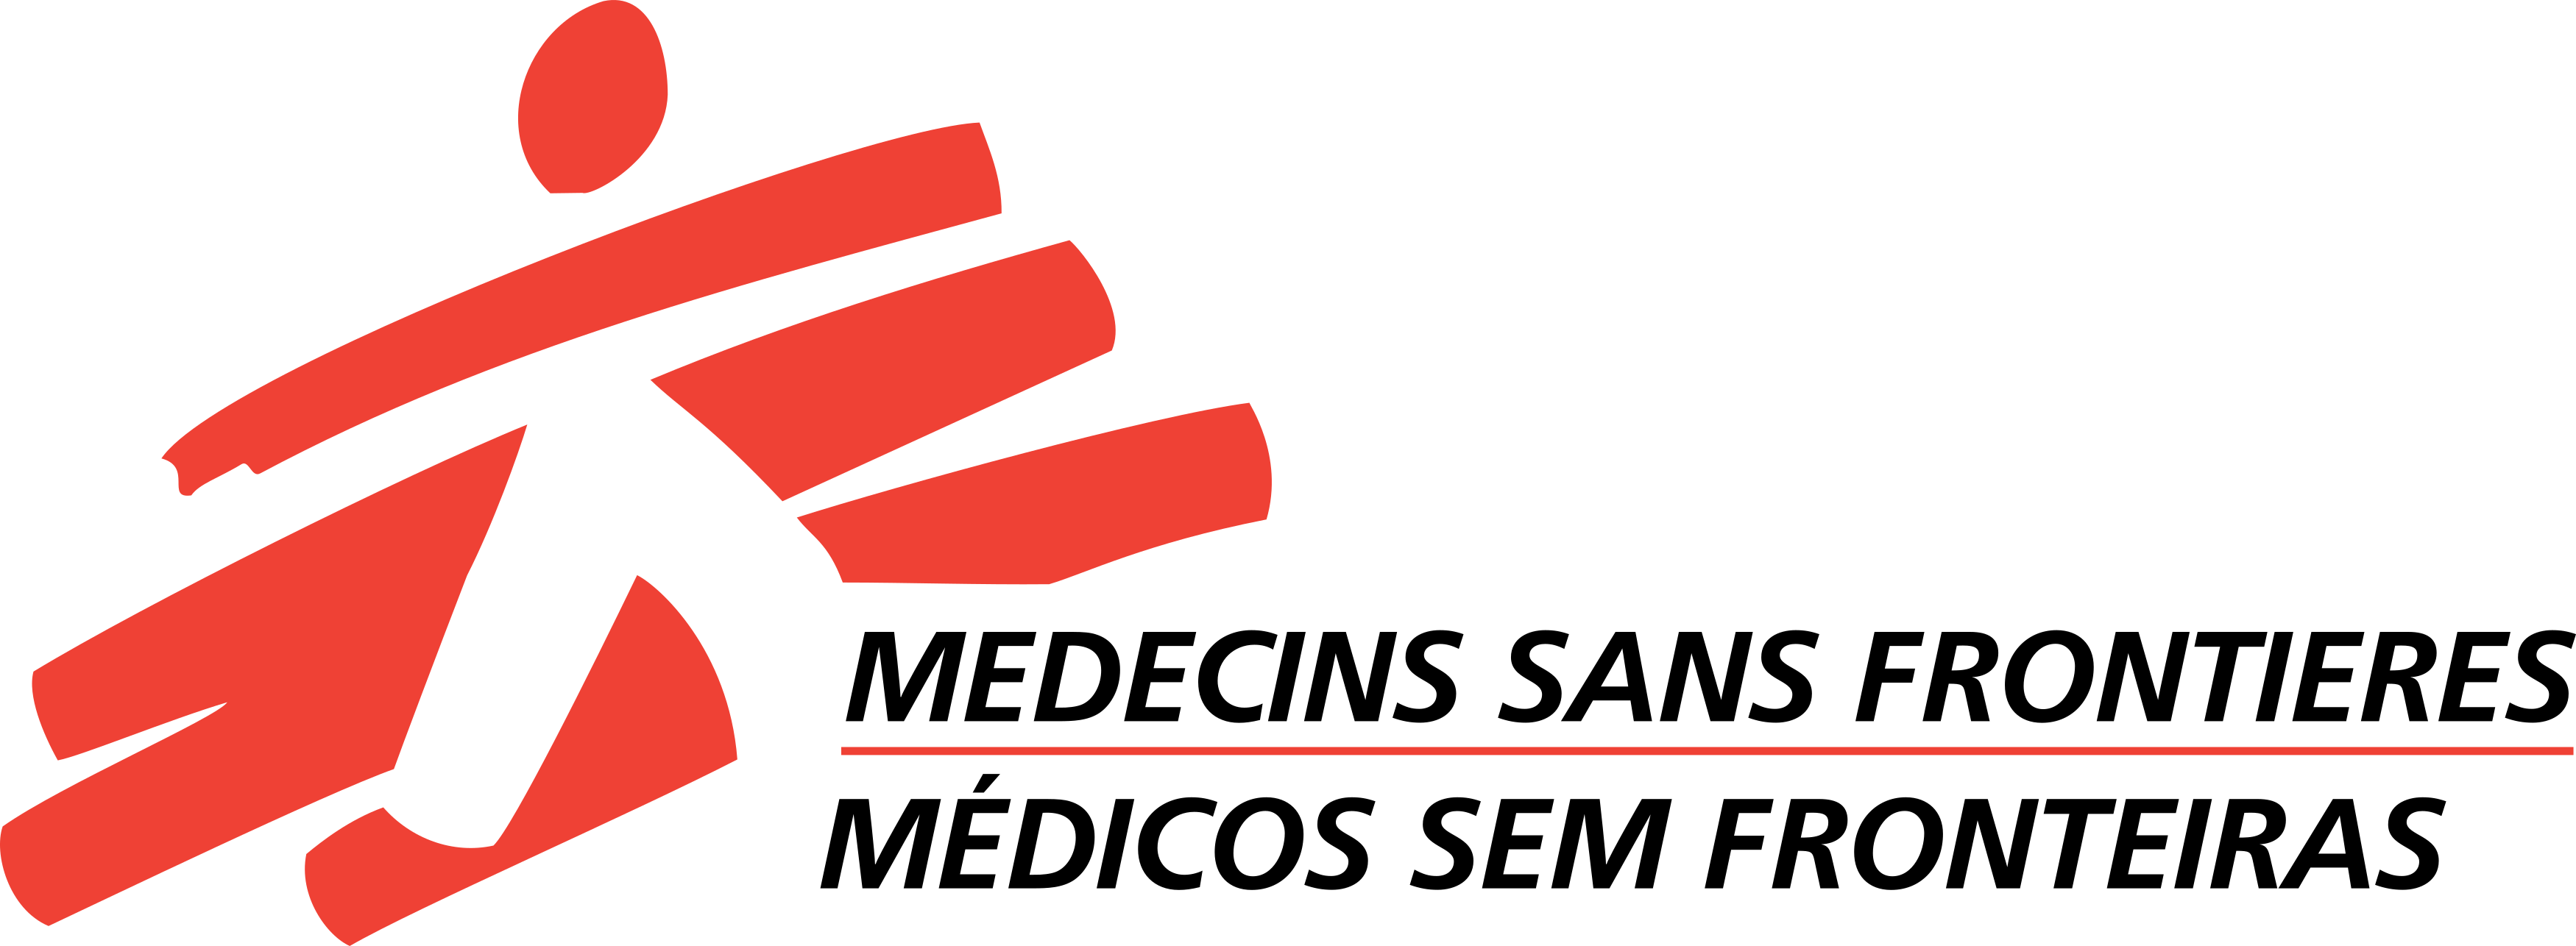 MSF Logo – Médicos Sem Fronteiras Logo - PNG e Vetor - Download de ...